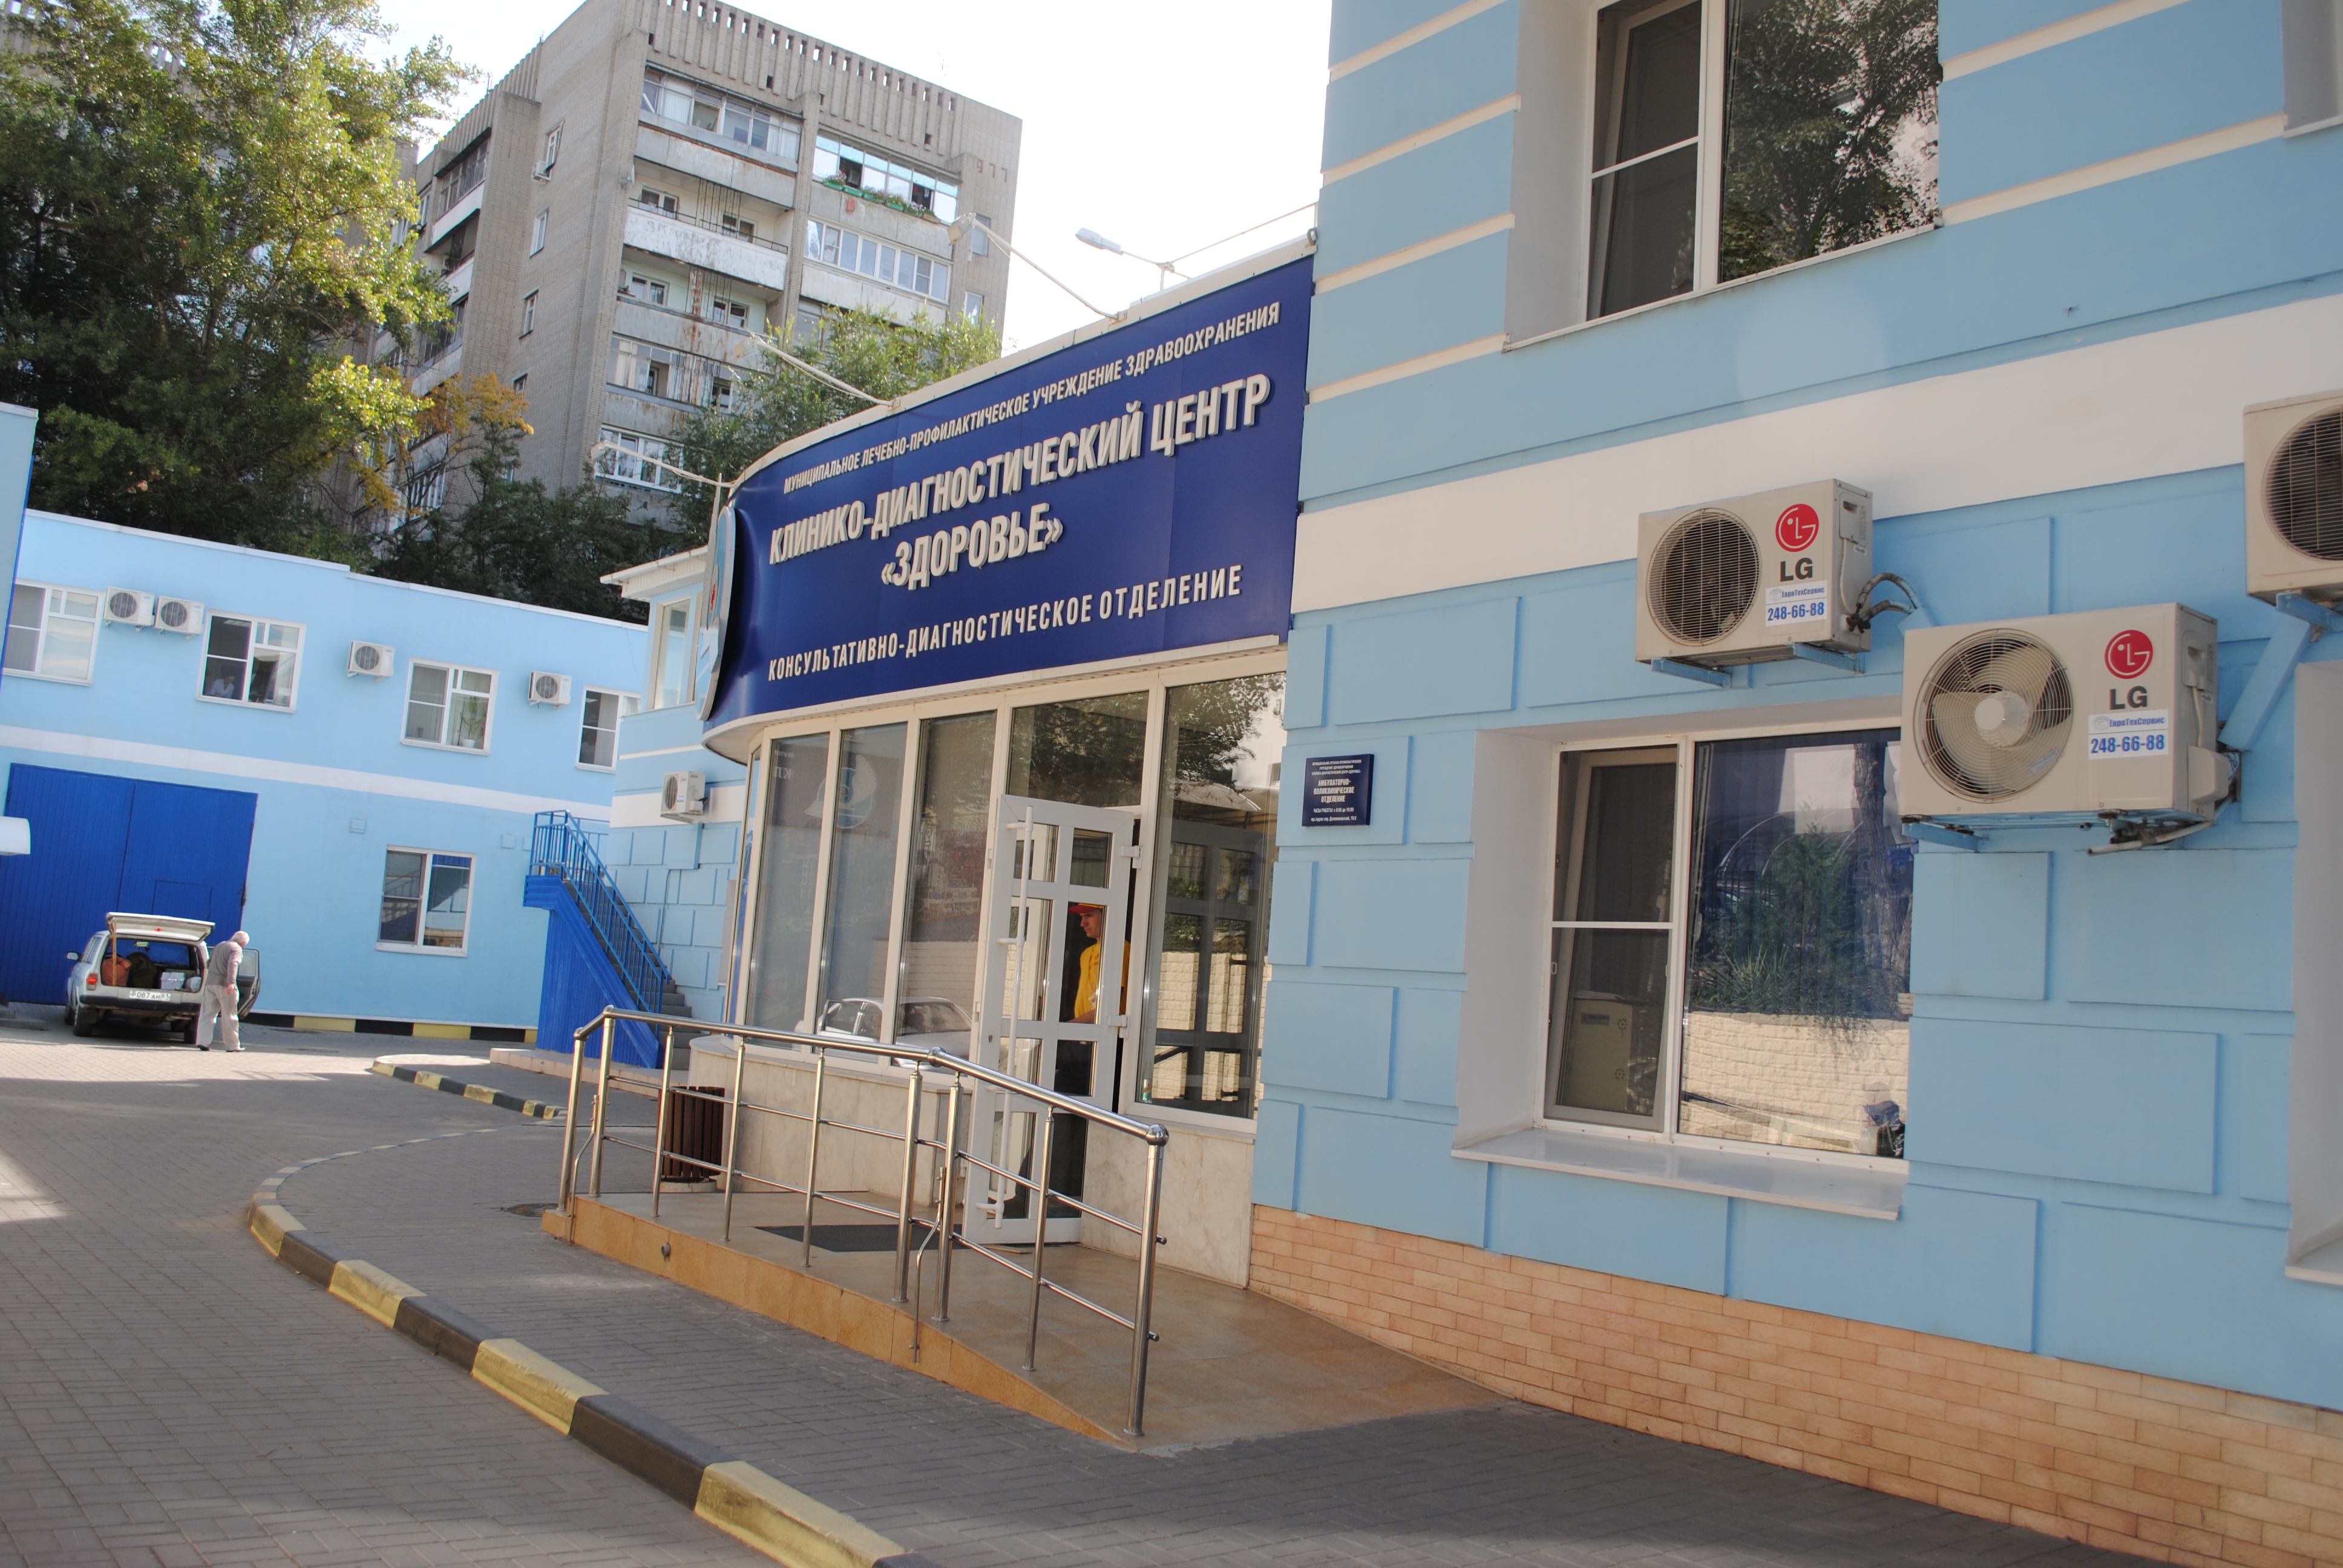 Клинико диагностический центр здоровье доломановский пер